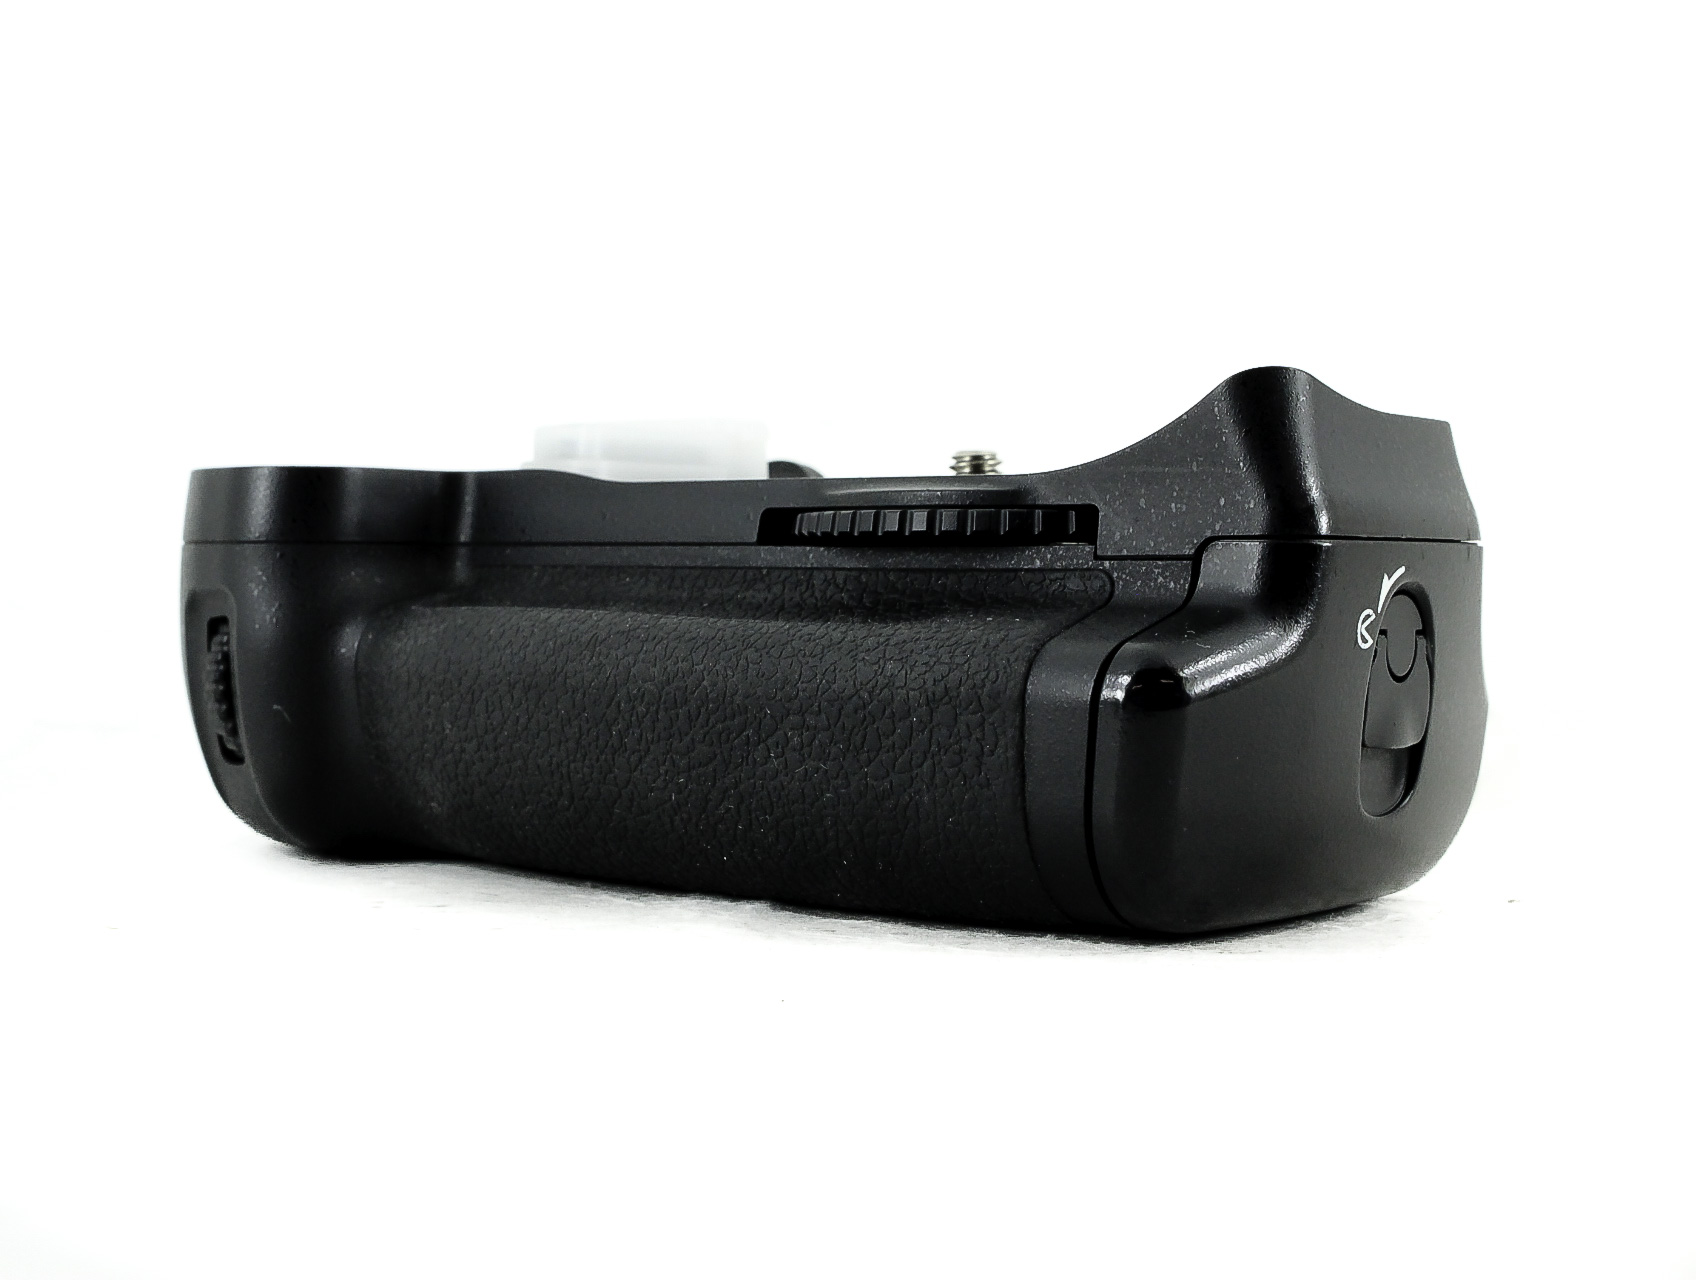 Nikon MB-D10 Battery Grip for D300 / D300s / D700